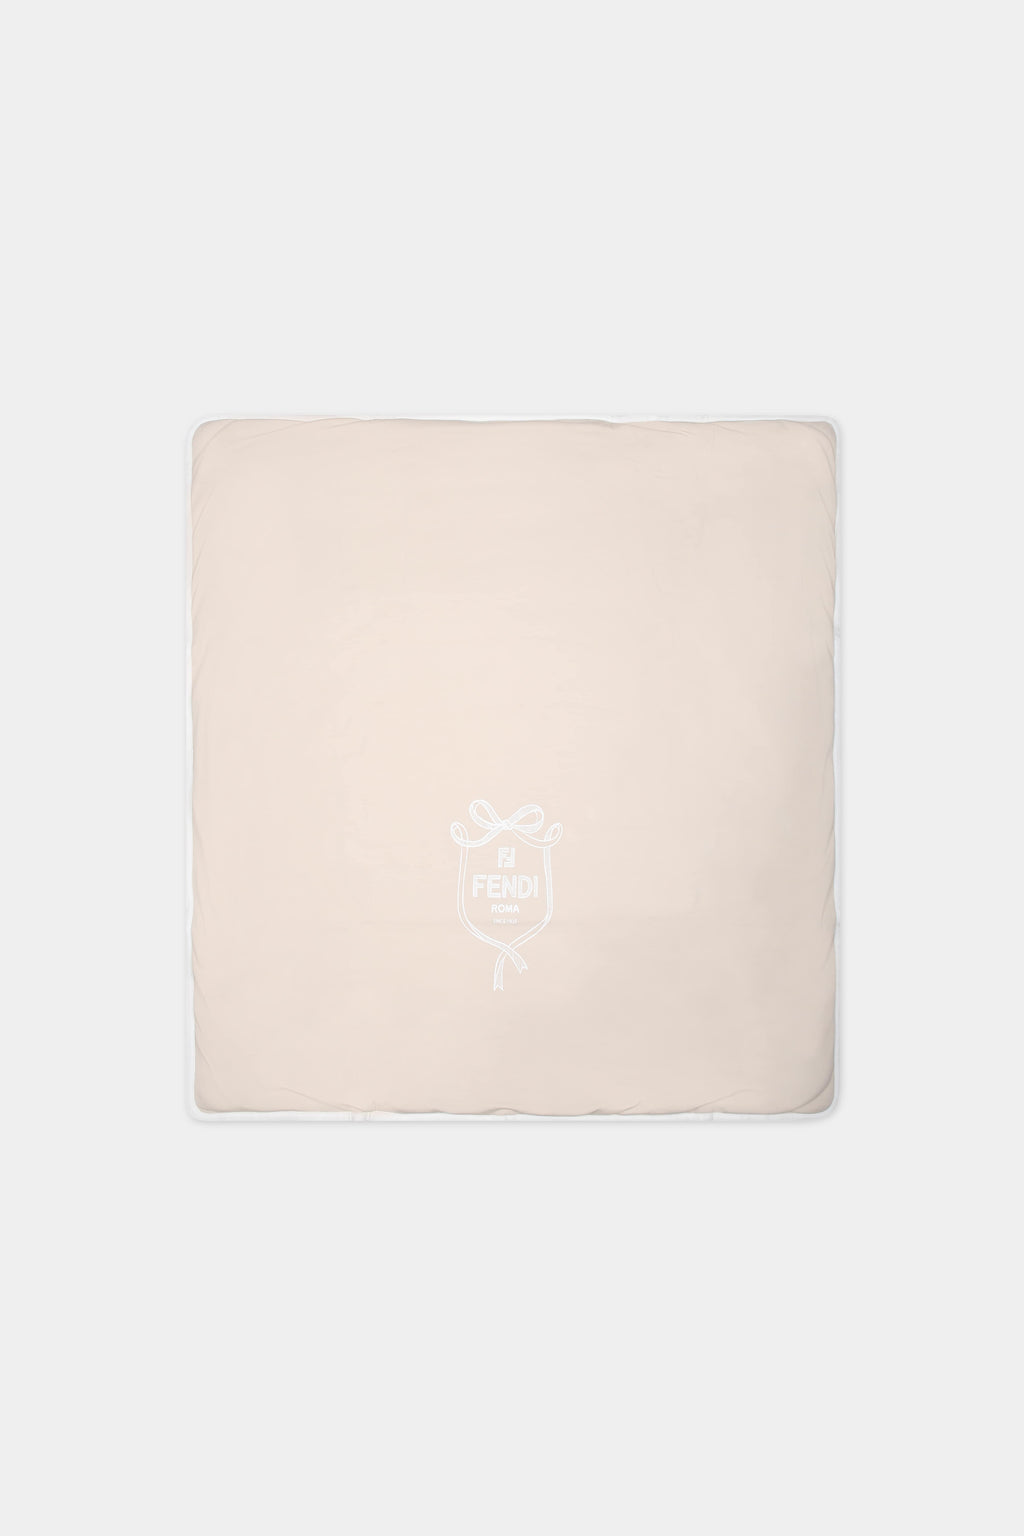 Coperta beige per neonati con logo Fendi